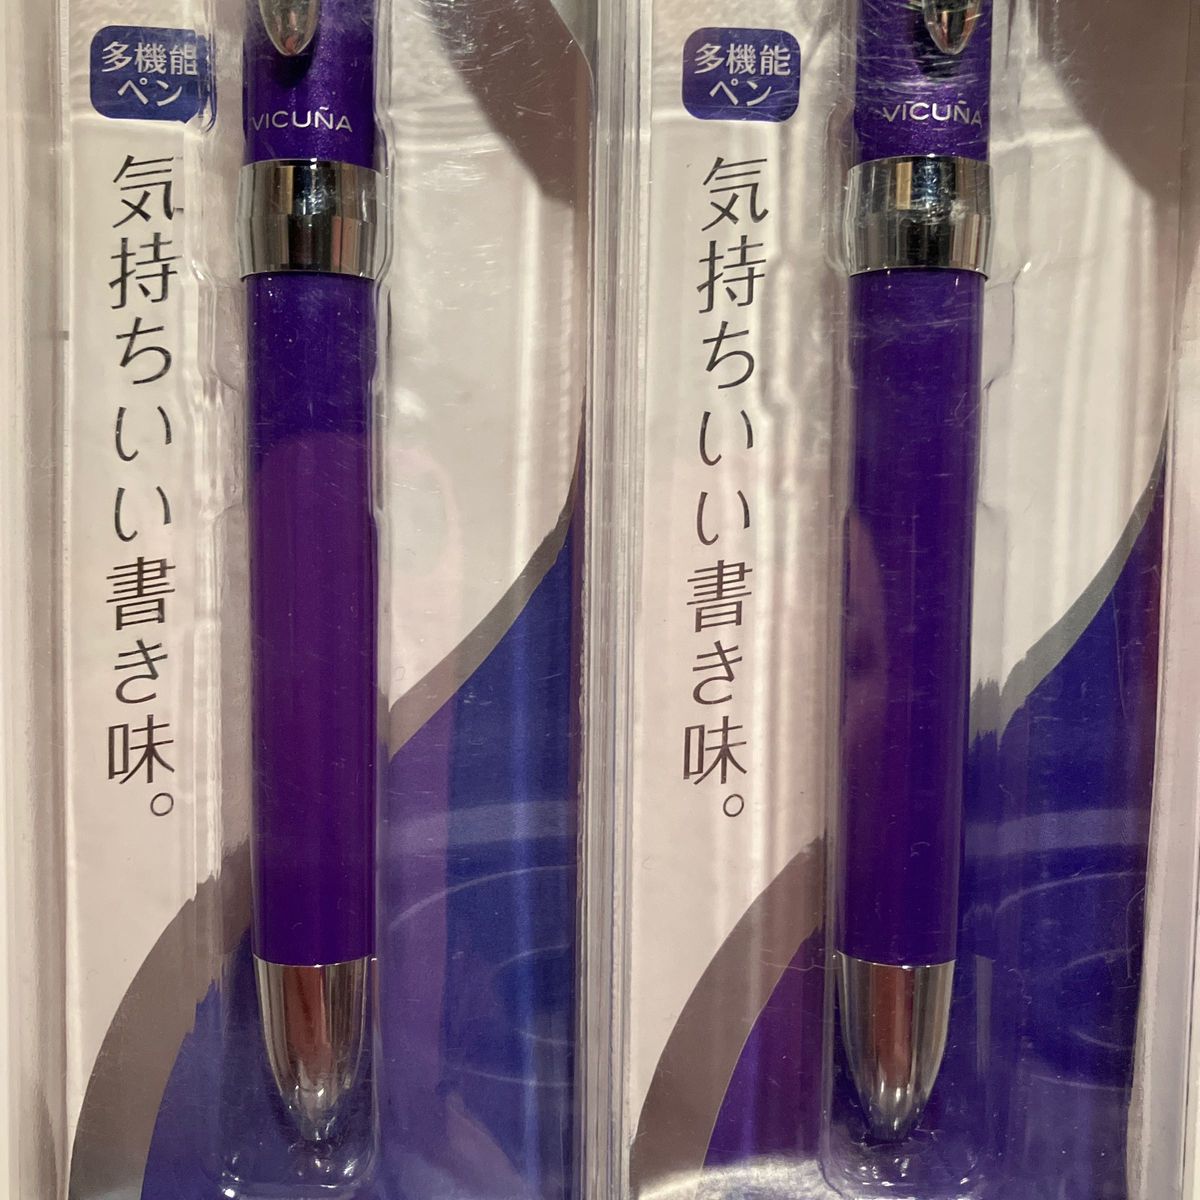 新品 2本セット ペンてる 多機能ペン ビクーニャ ボールペン黒赤＆シャープペン